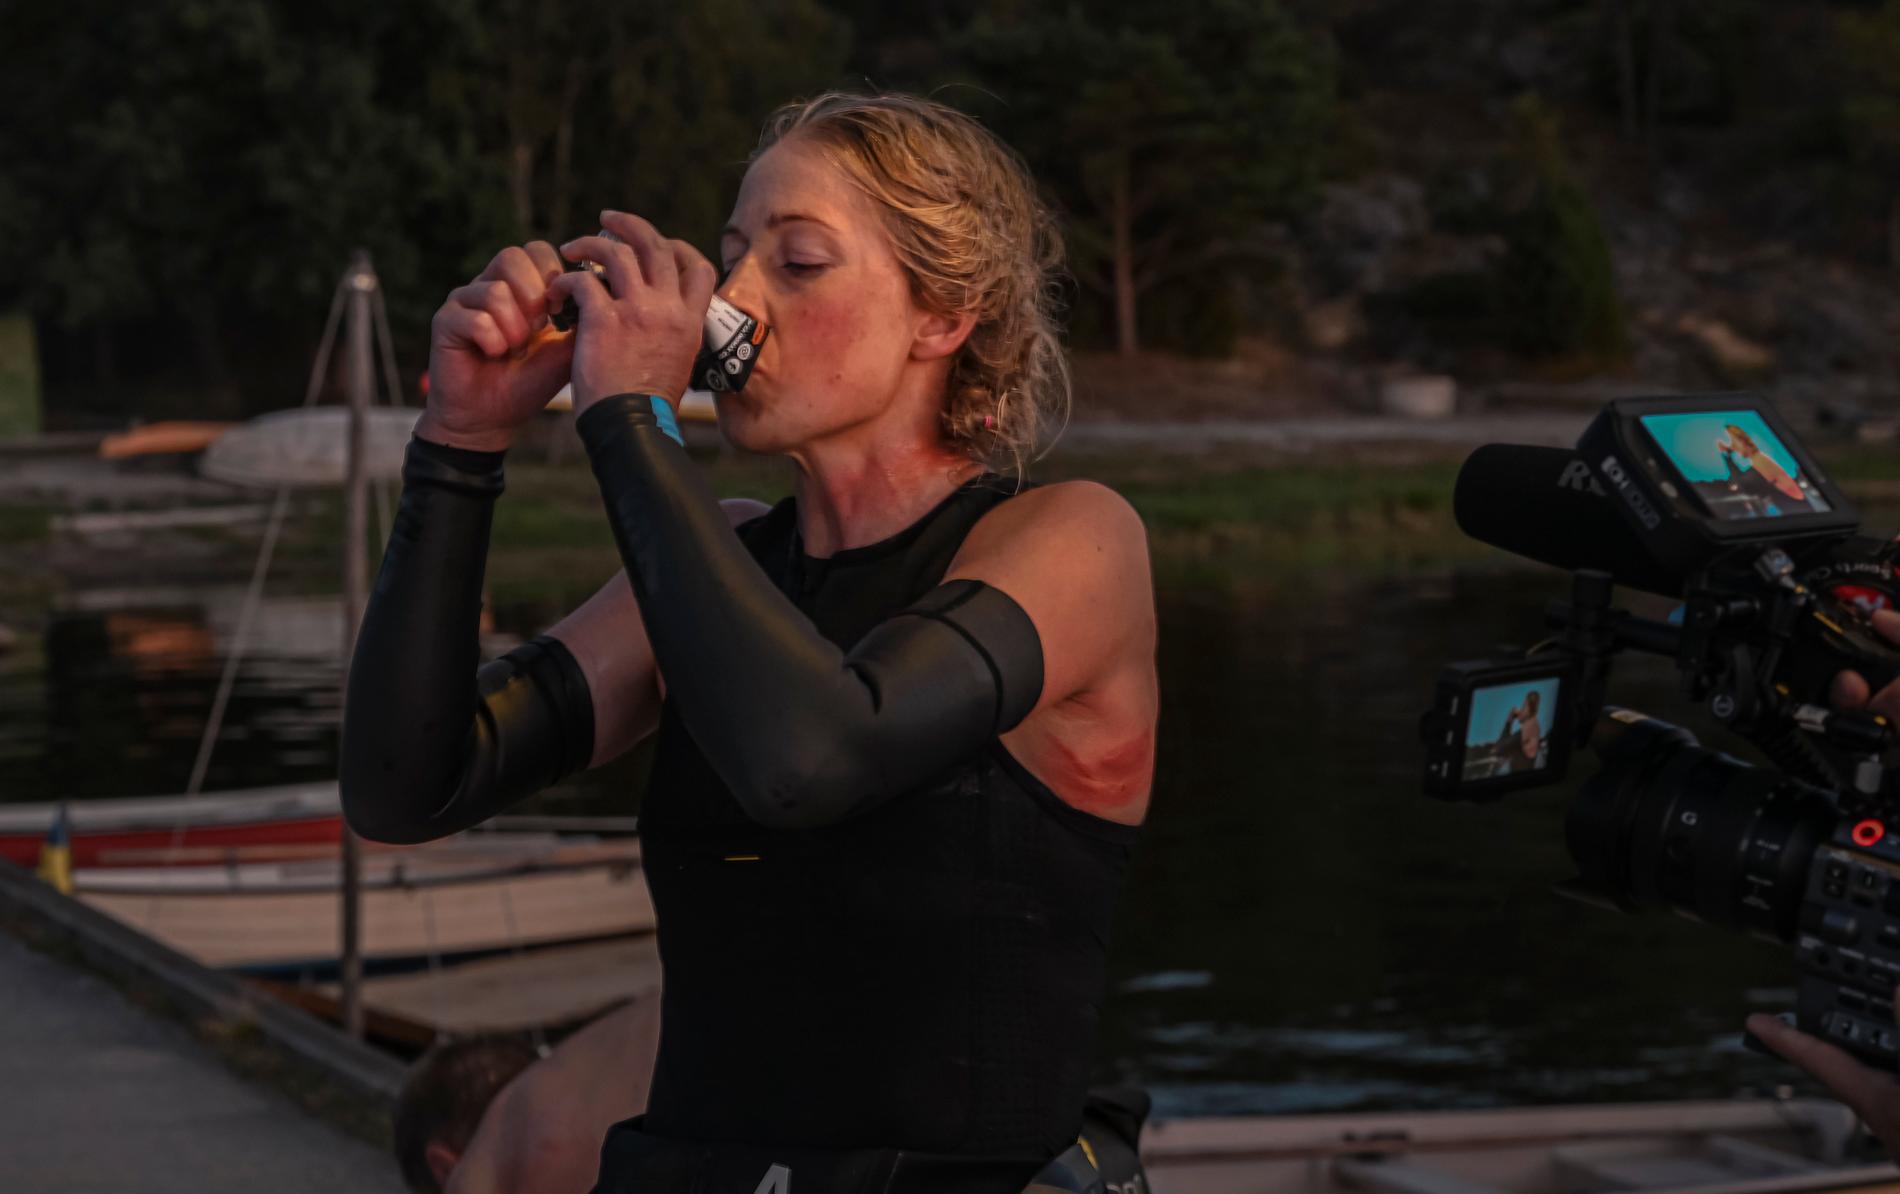 Kristin Larsson förbereder sig inför nattens över 6km långa simning. Våtdräktens skavsår börjar snart blöda.